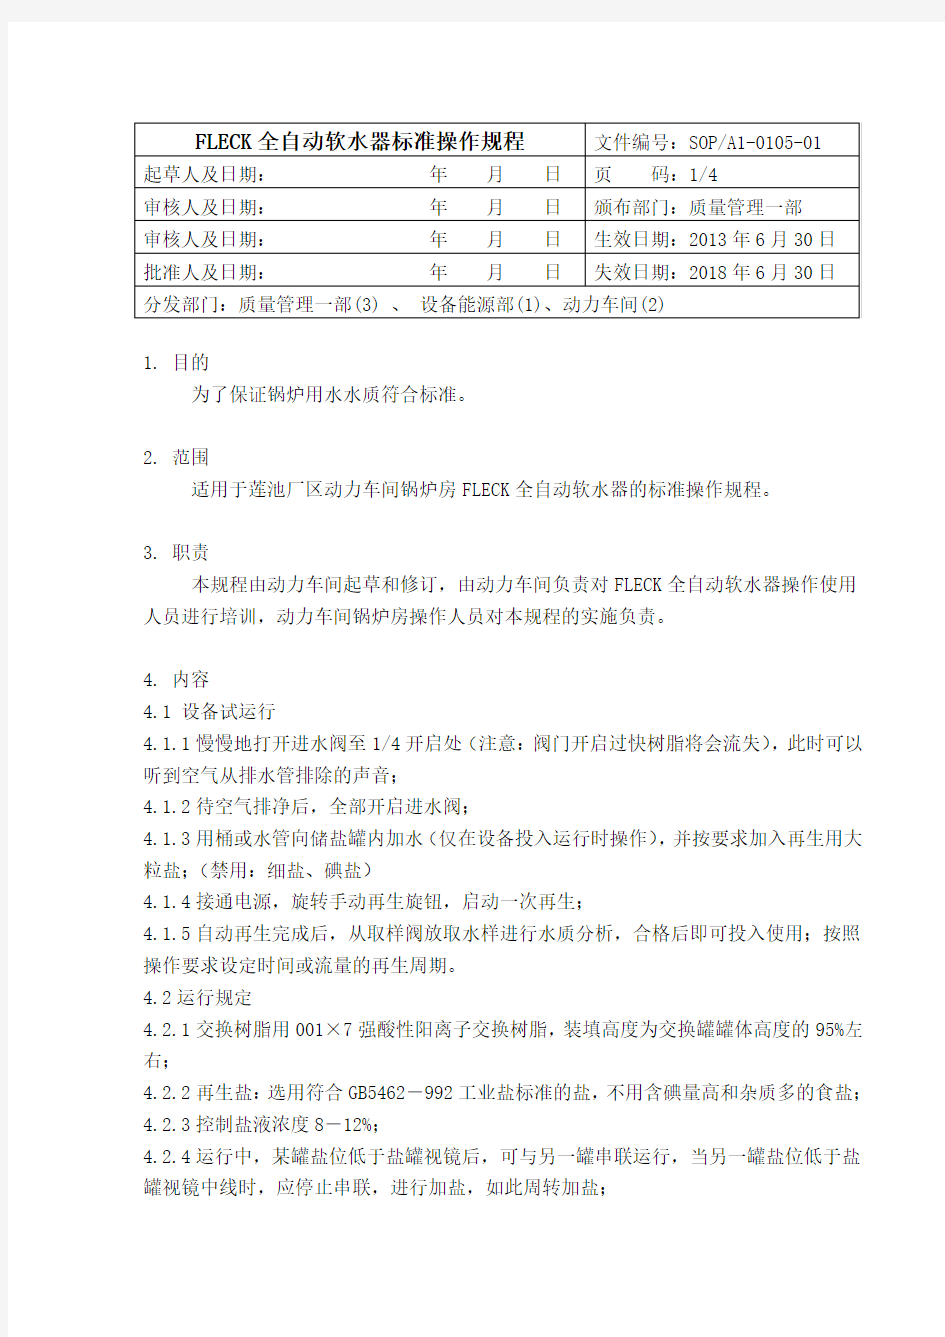 全自动软水器标准操作规程(2013.07.18)